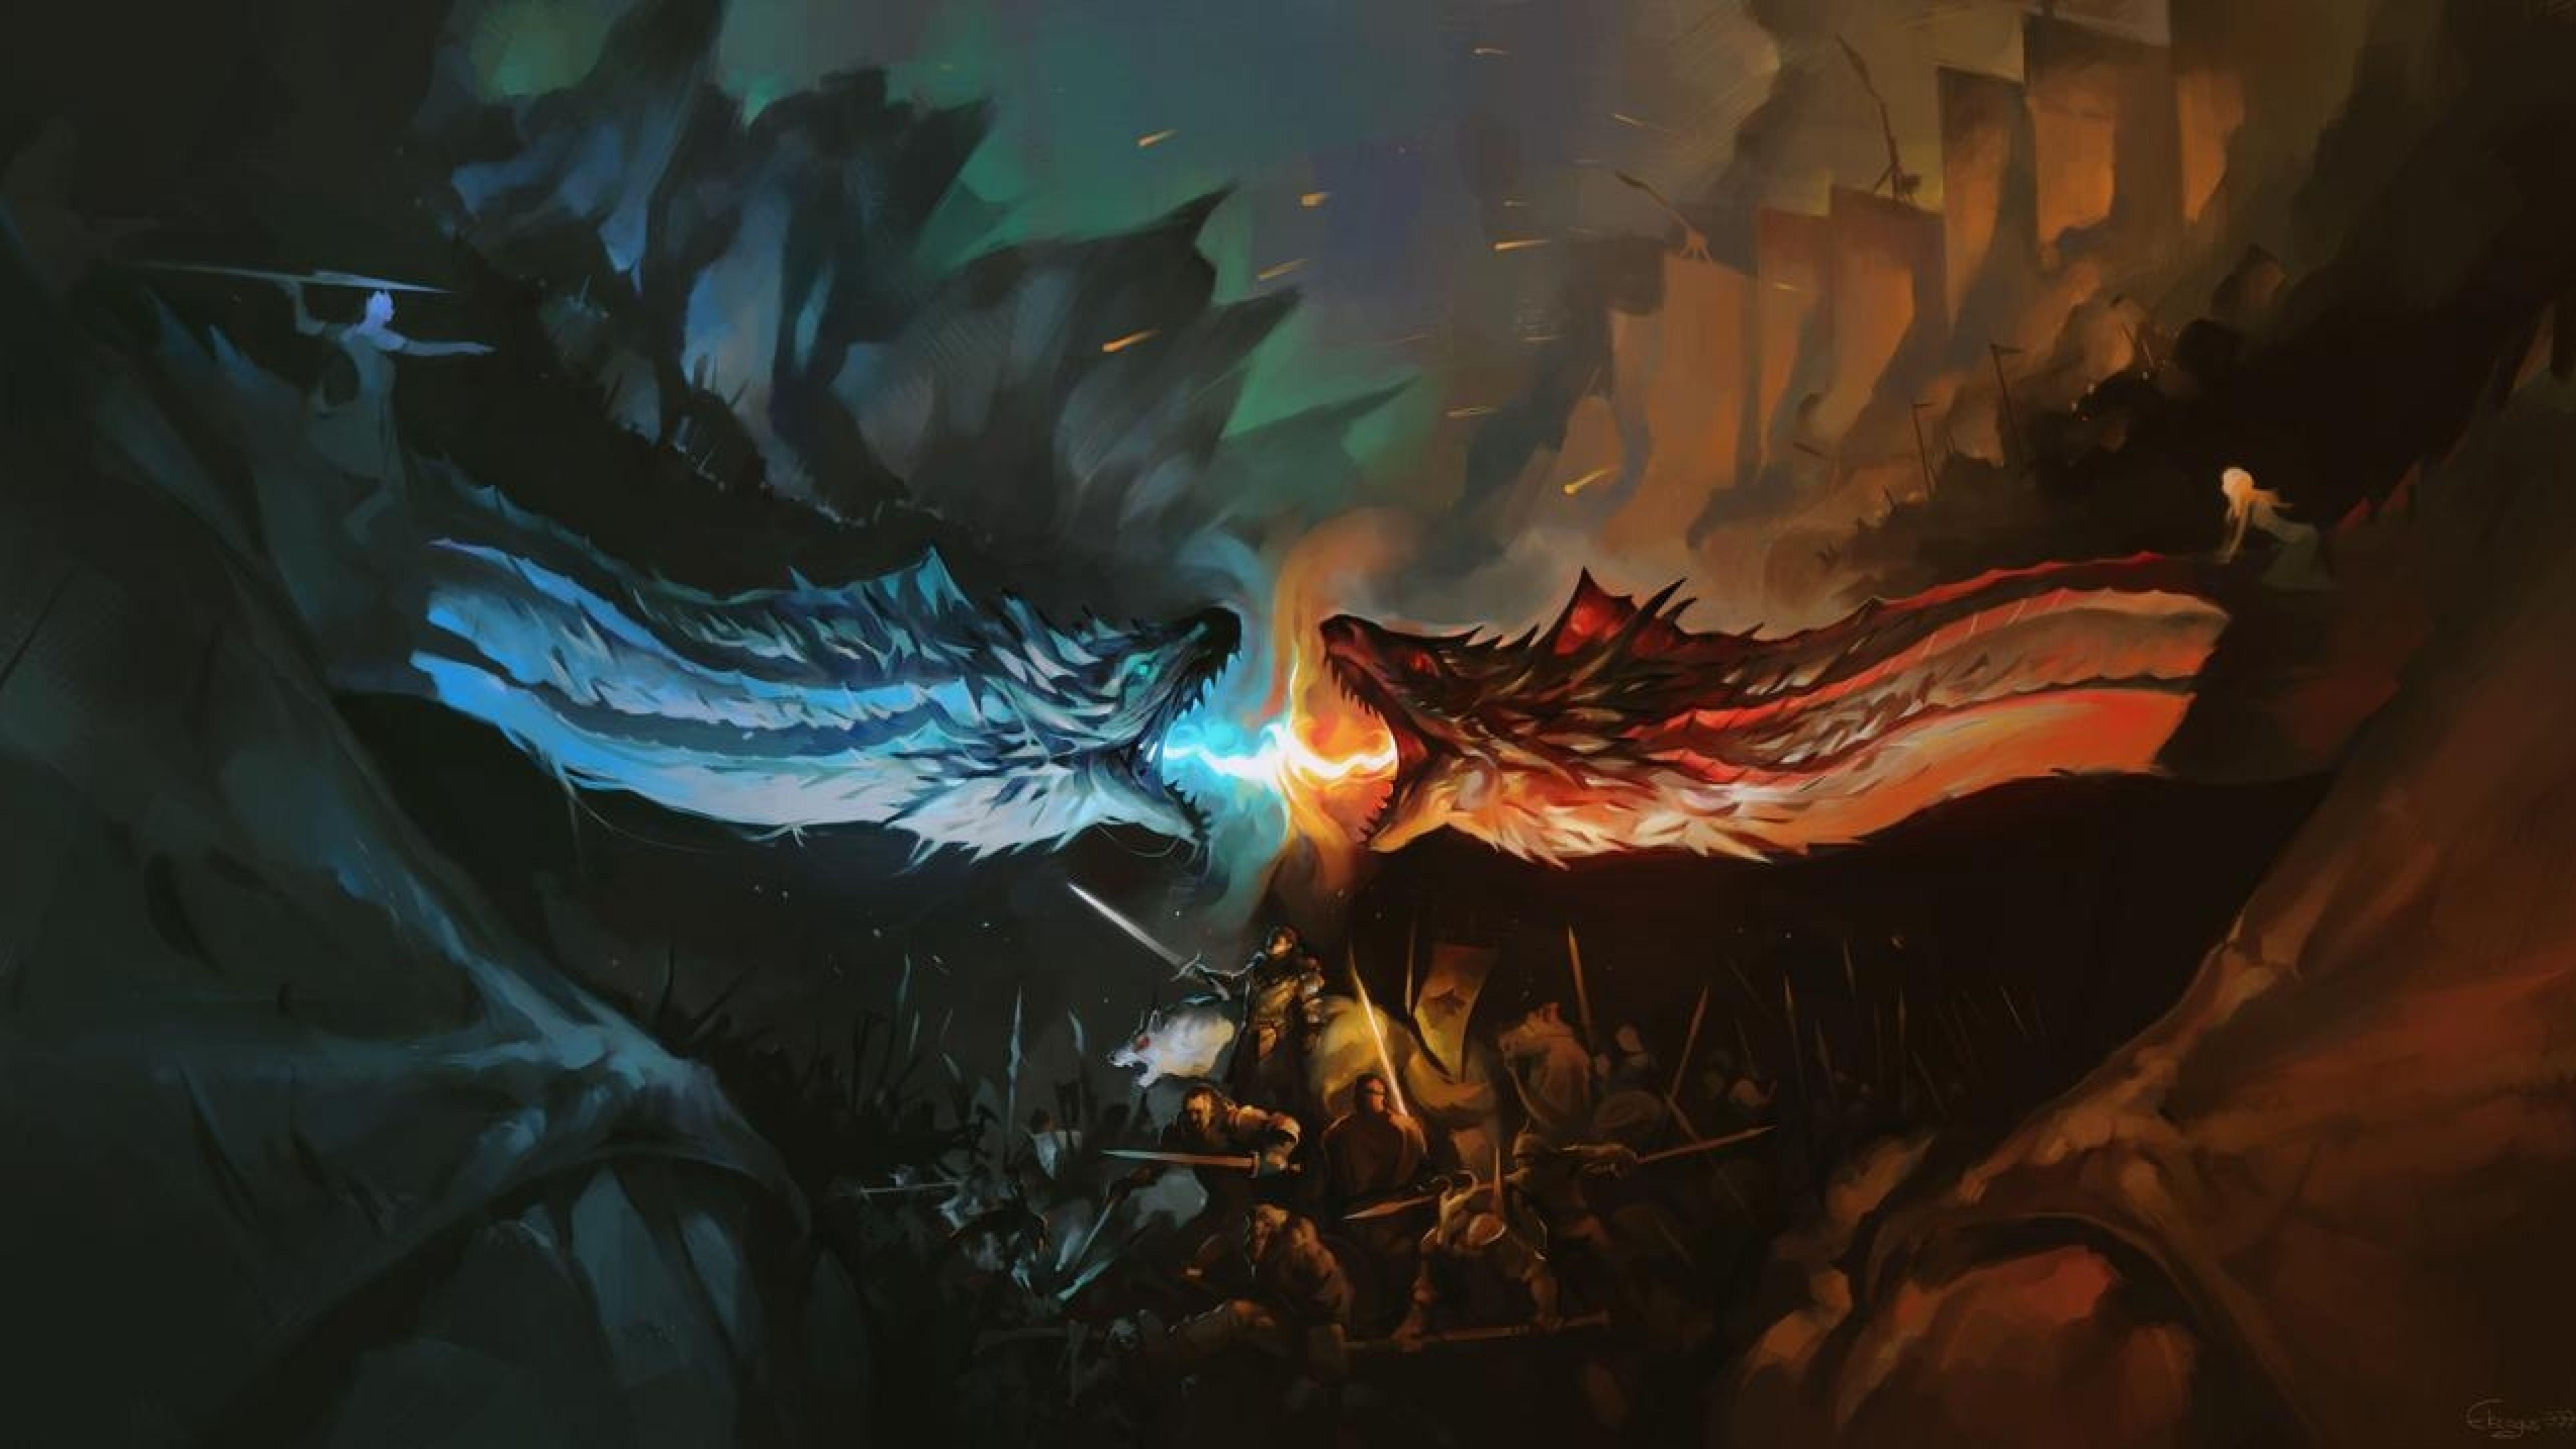 Game Of Thrones Desktop Wallpapers Top Free Game Of Thrones Desktop Backgrounds Wallpaperaccess